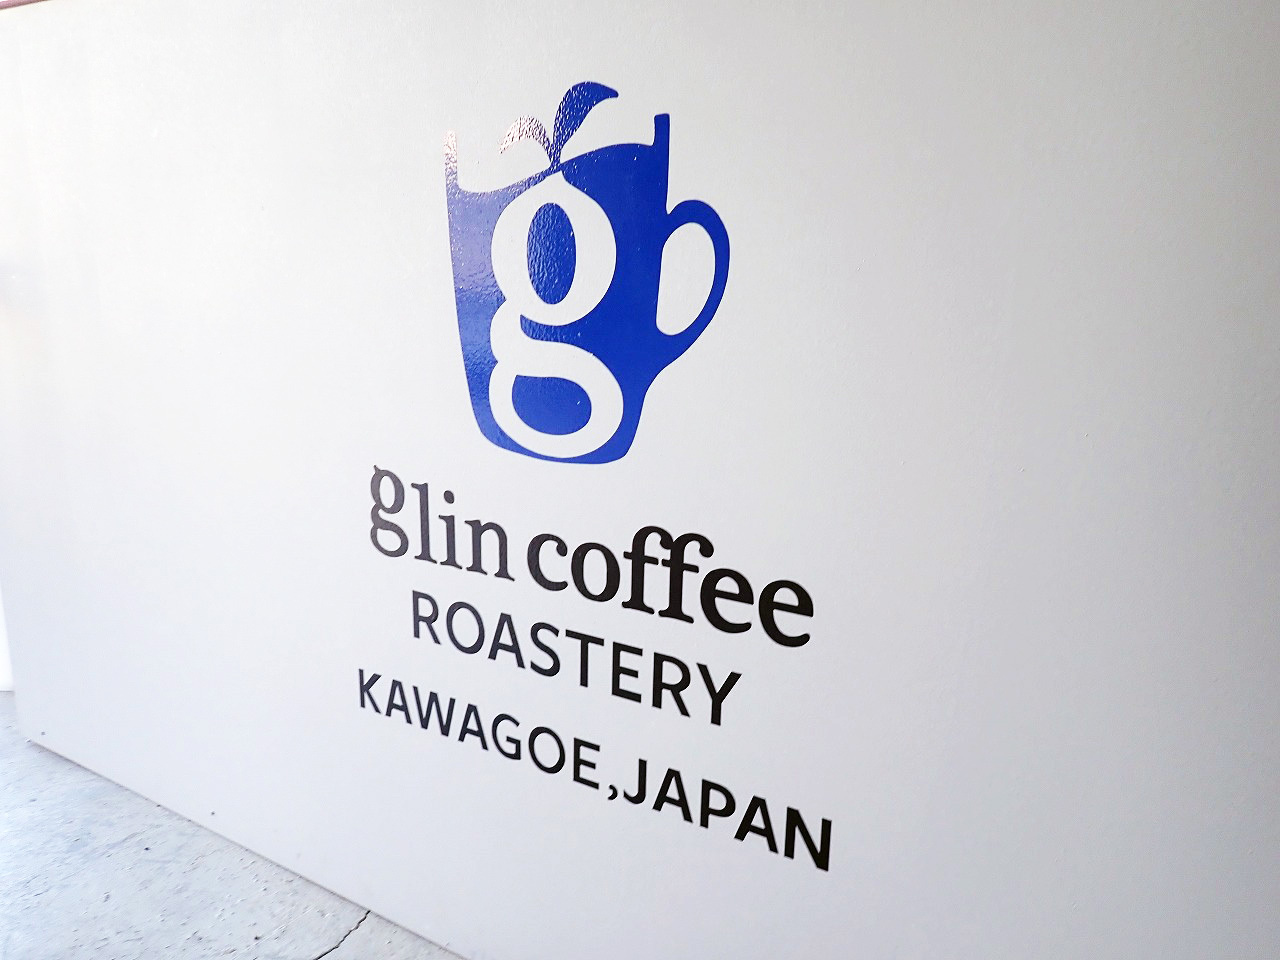 この「KAWAGOE」が入ったロゴは全国に展開したとしても、ずっと変えない予定だそう。グリンコーヒーの今後に期待です。大谷さん、今回はありがとうございました